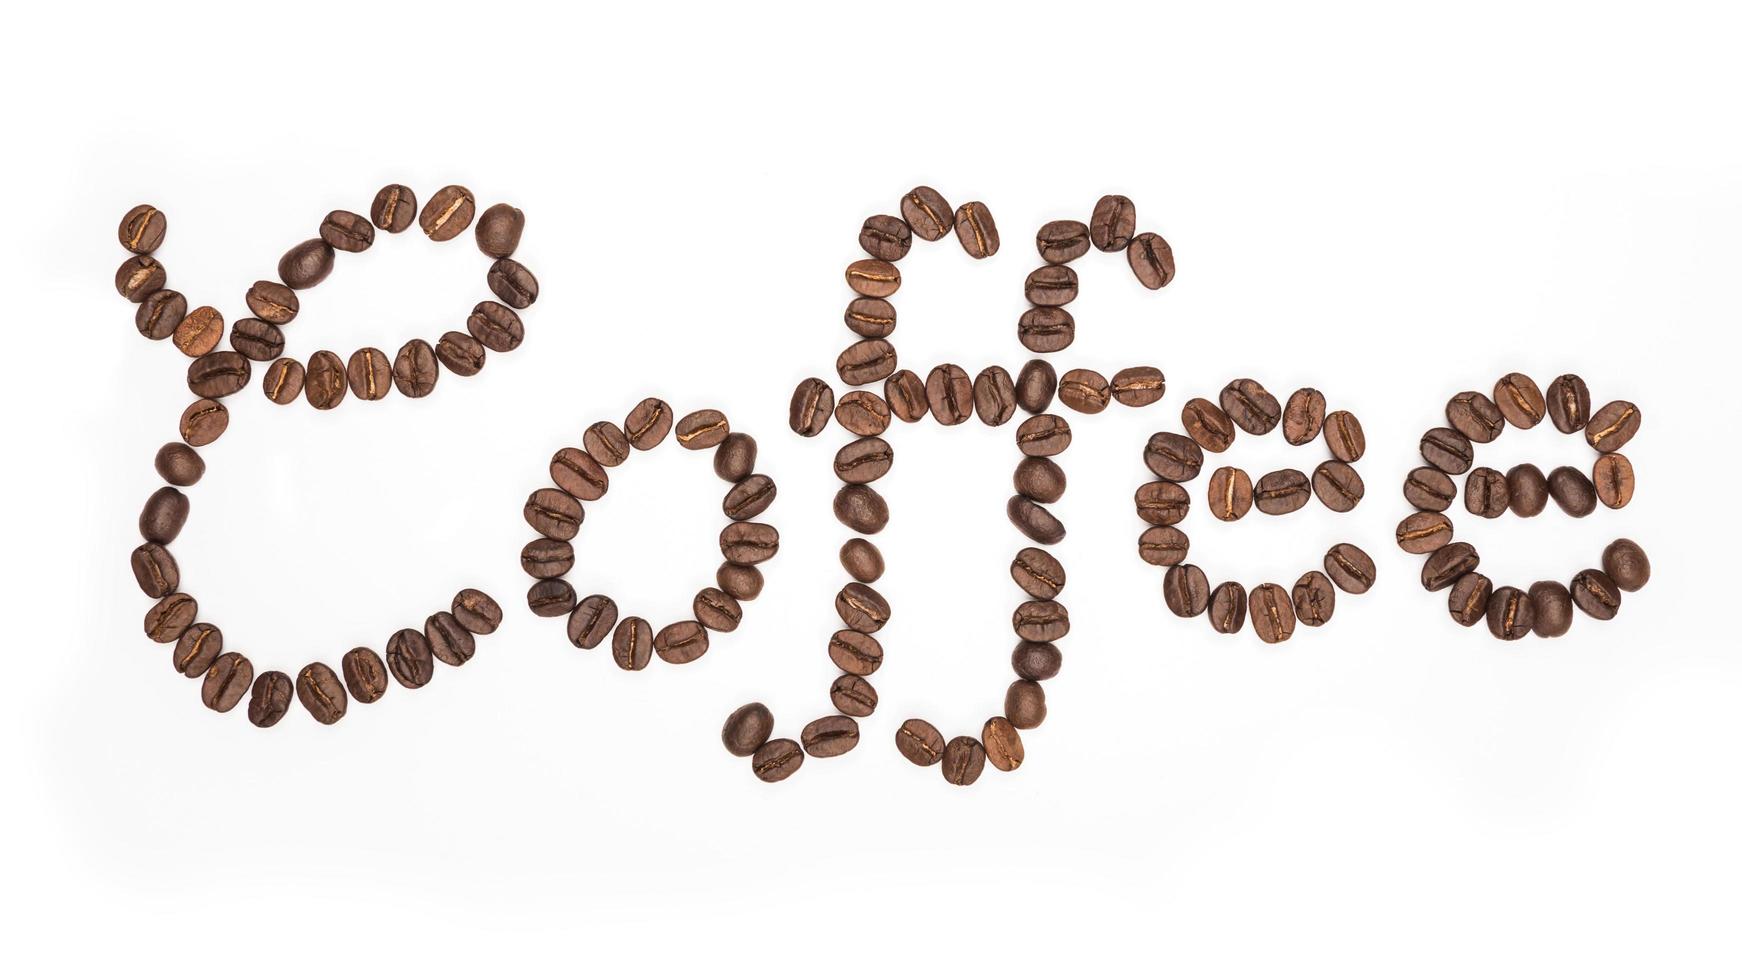 letra a palavra café feito de grãos de café, isolado no branco. conceitos, alfabeto, fonte foto